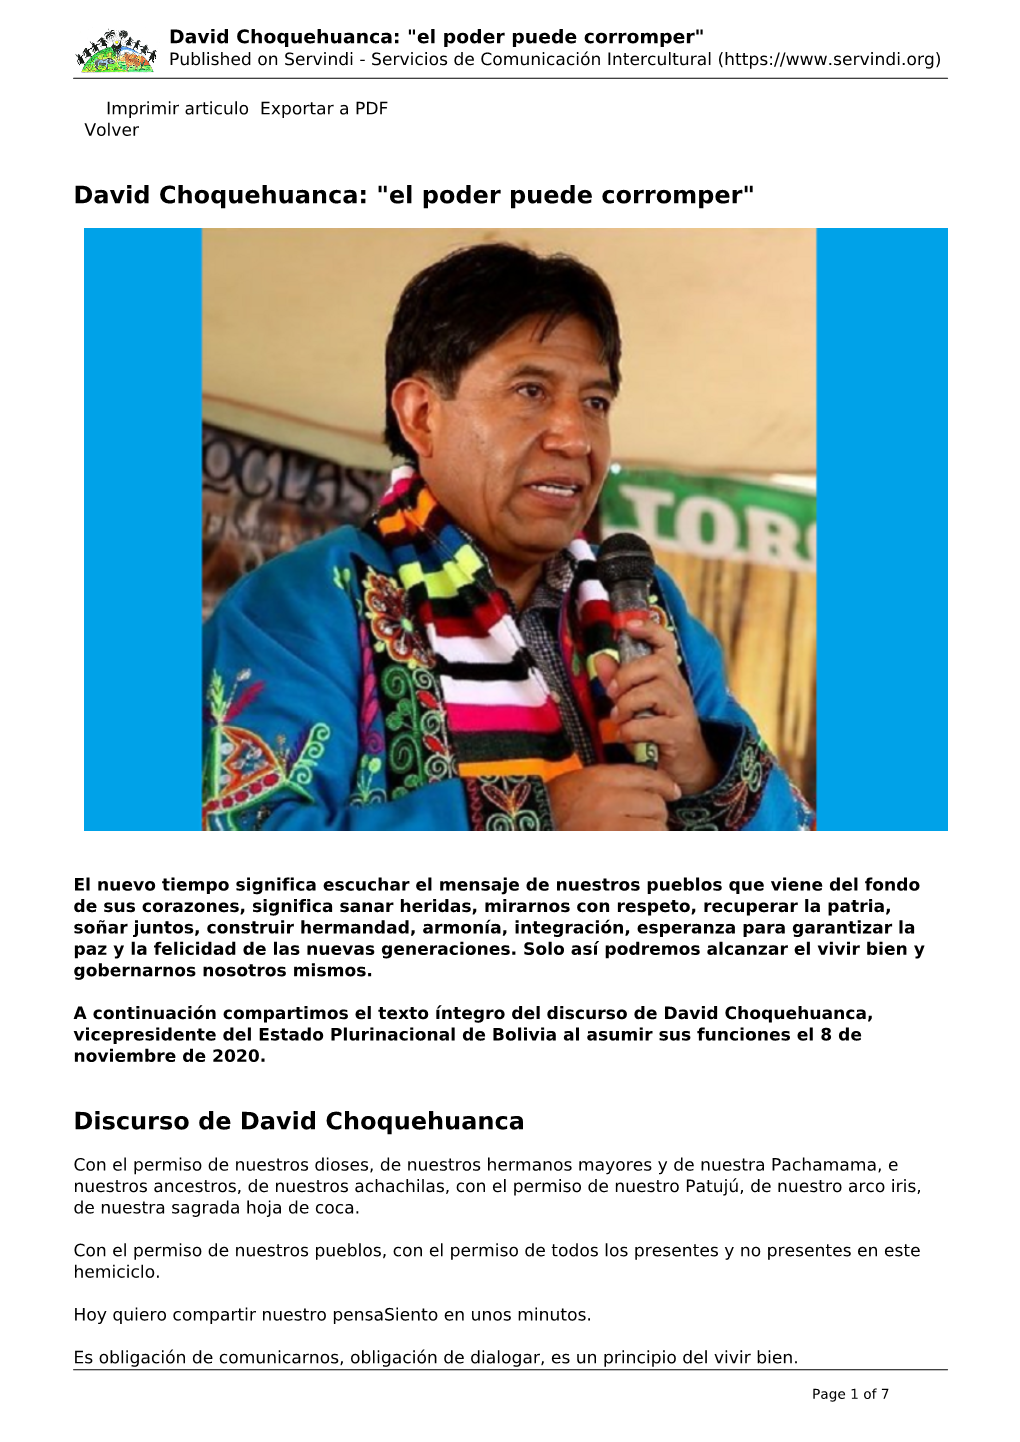 David Choquehuanca: "El Poder Puede Corromper" Published on Servindi - Servicios De Comunicación Intercultural (